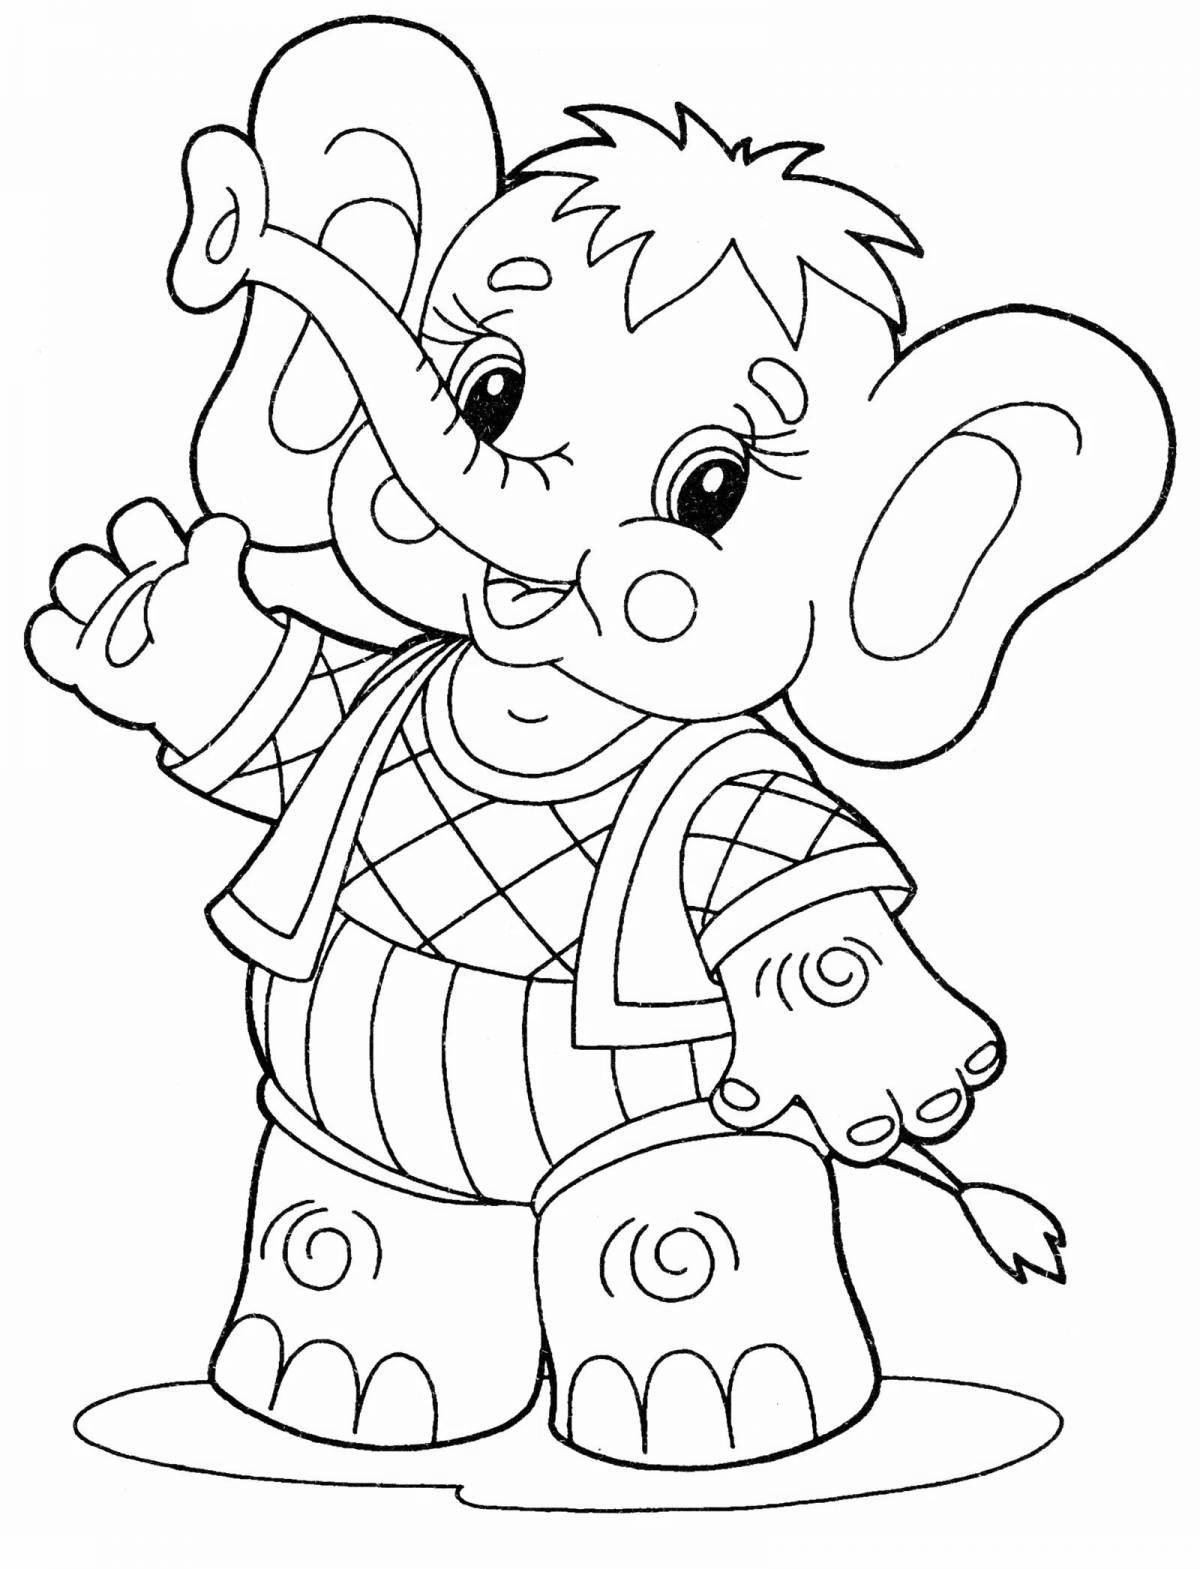 Игривая раскраска слона для детей